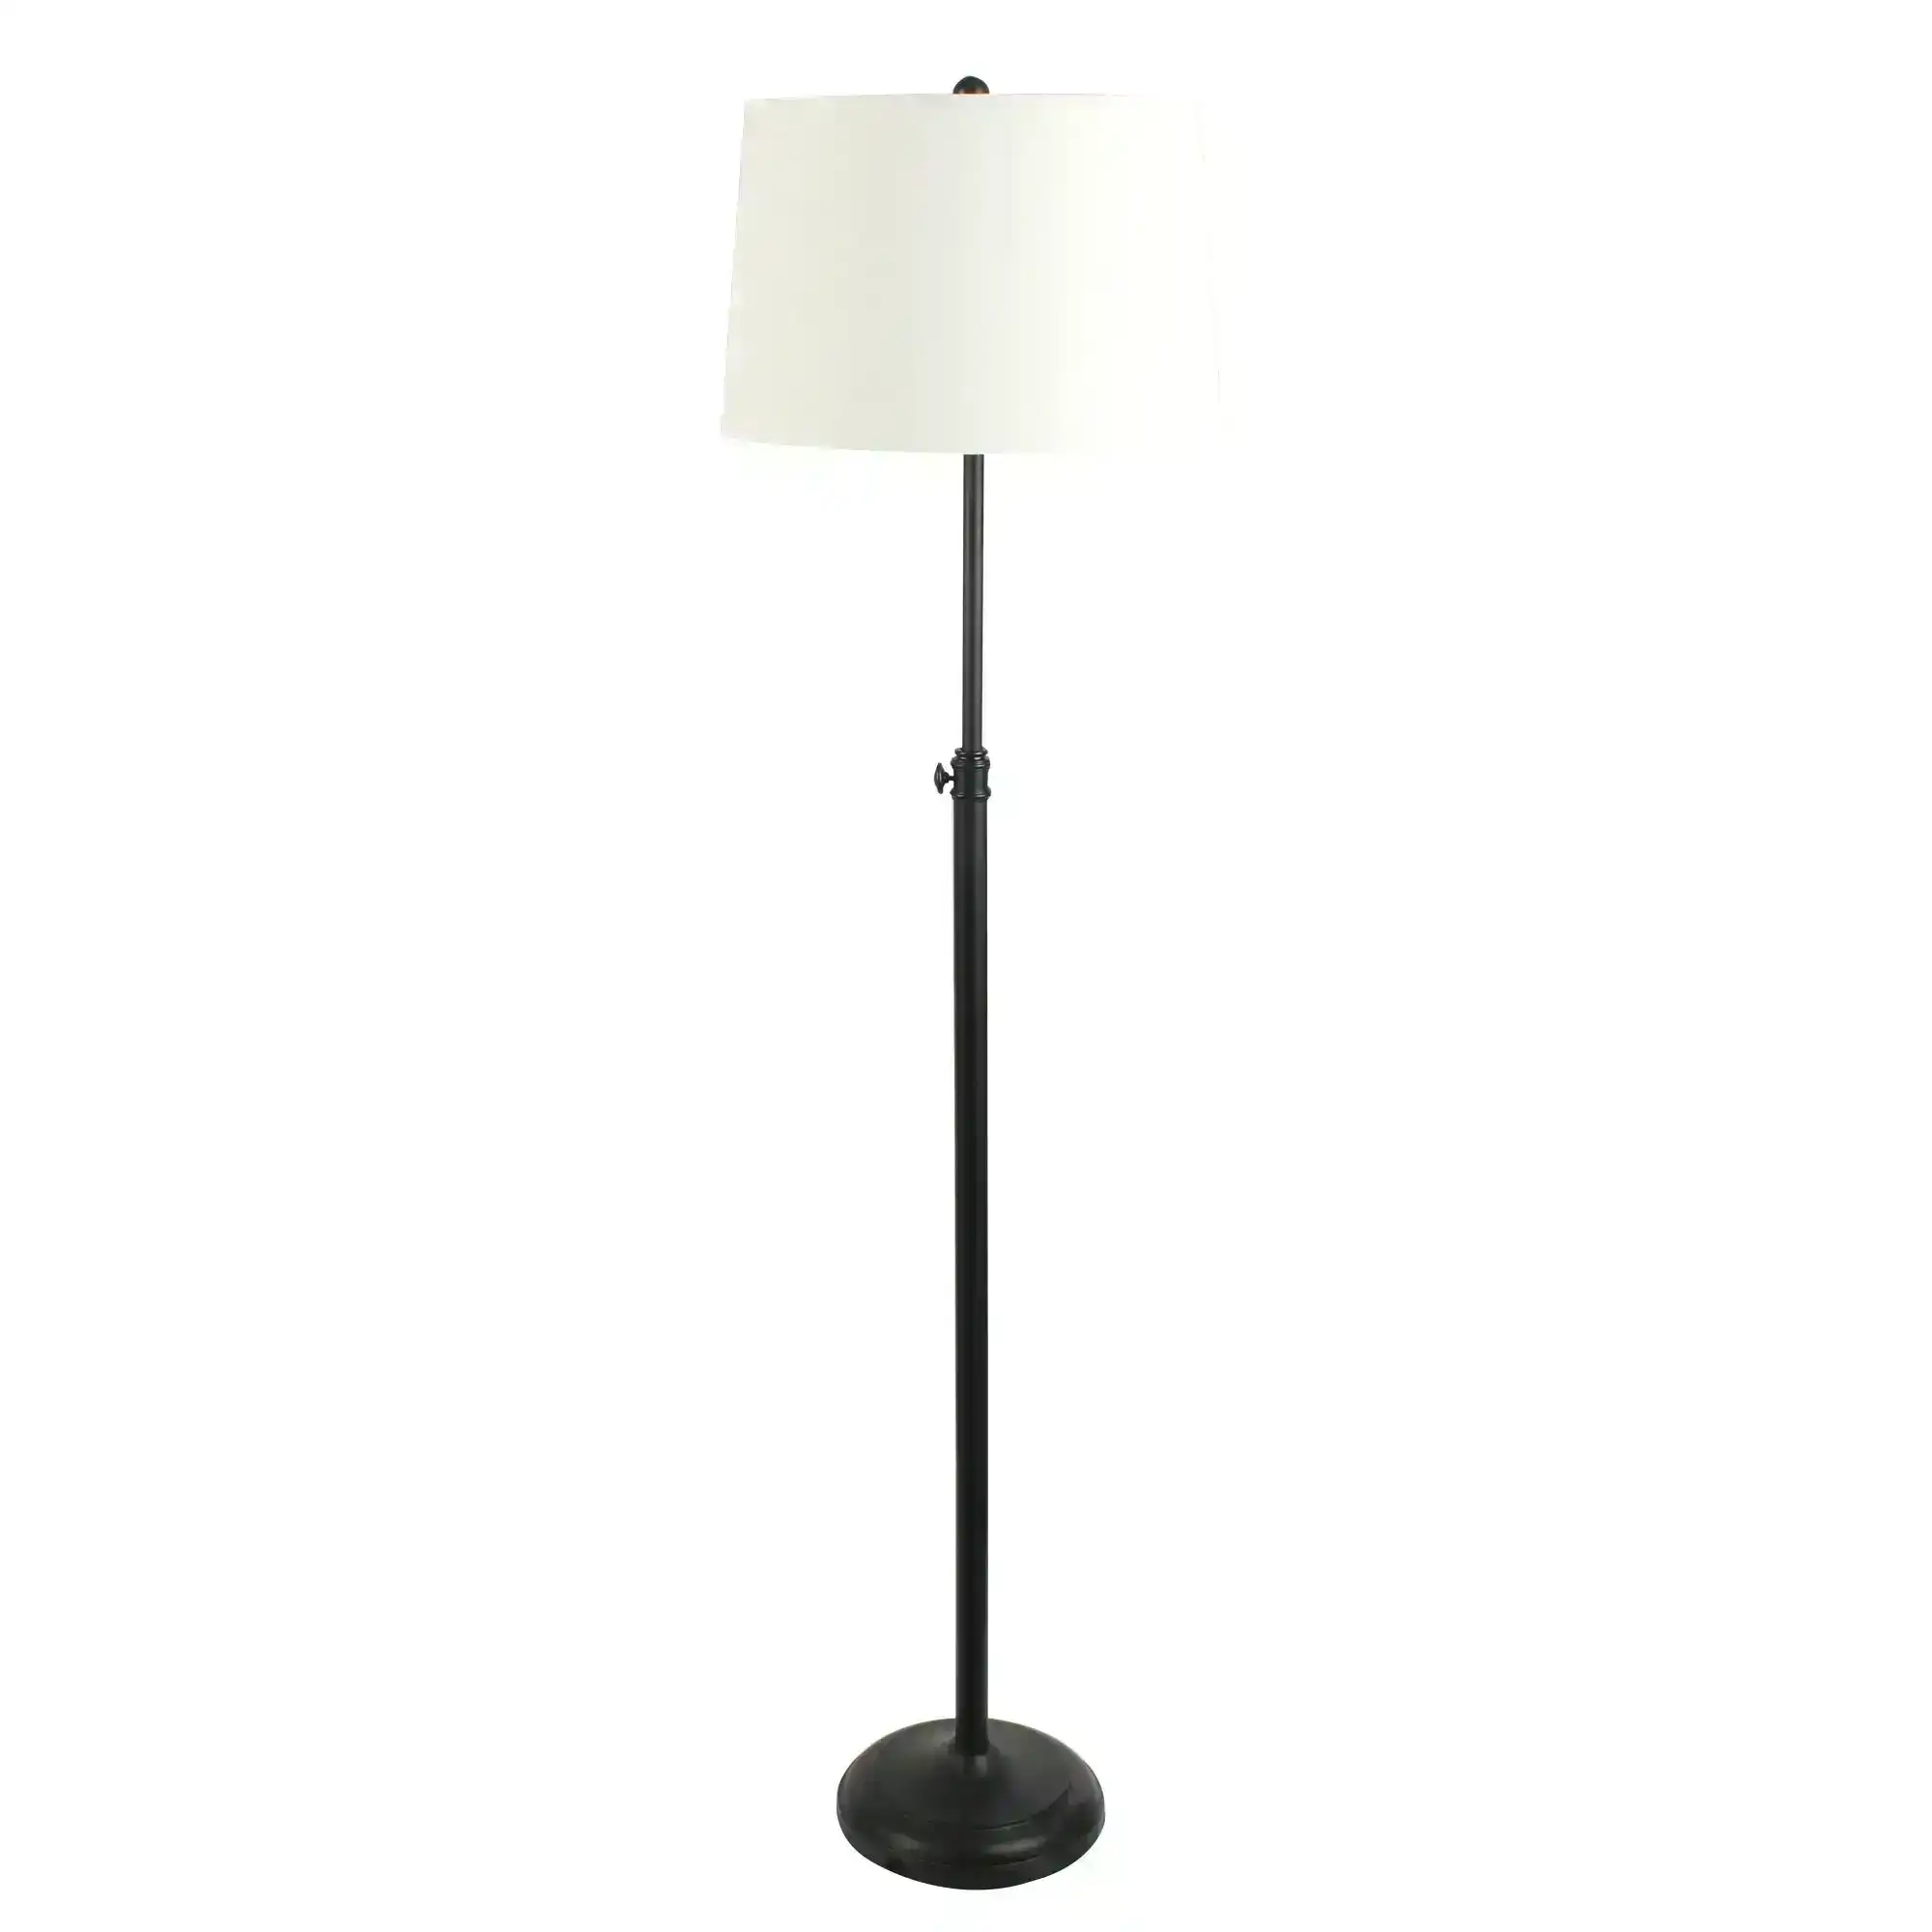 WINDSOR FLOOR LAMP Complete Metal Floor Lamp